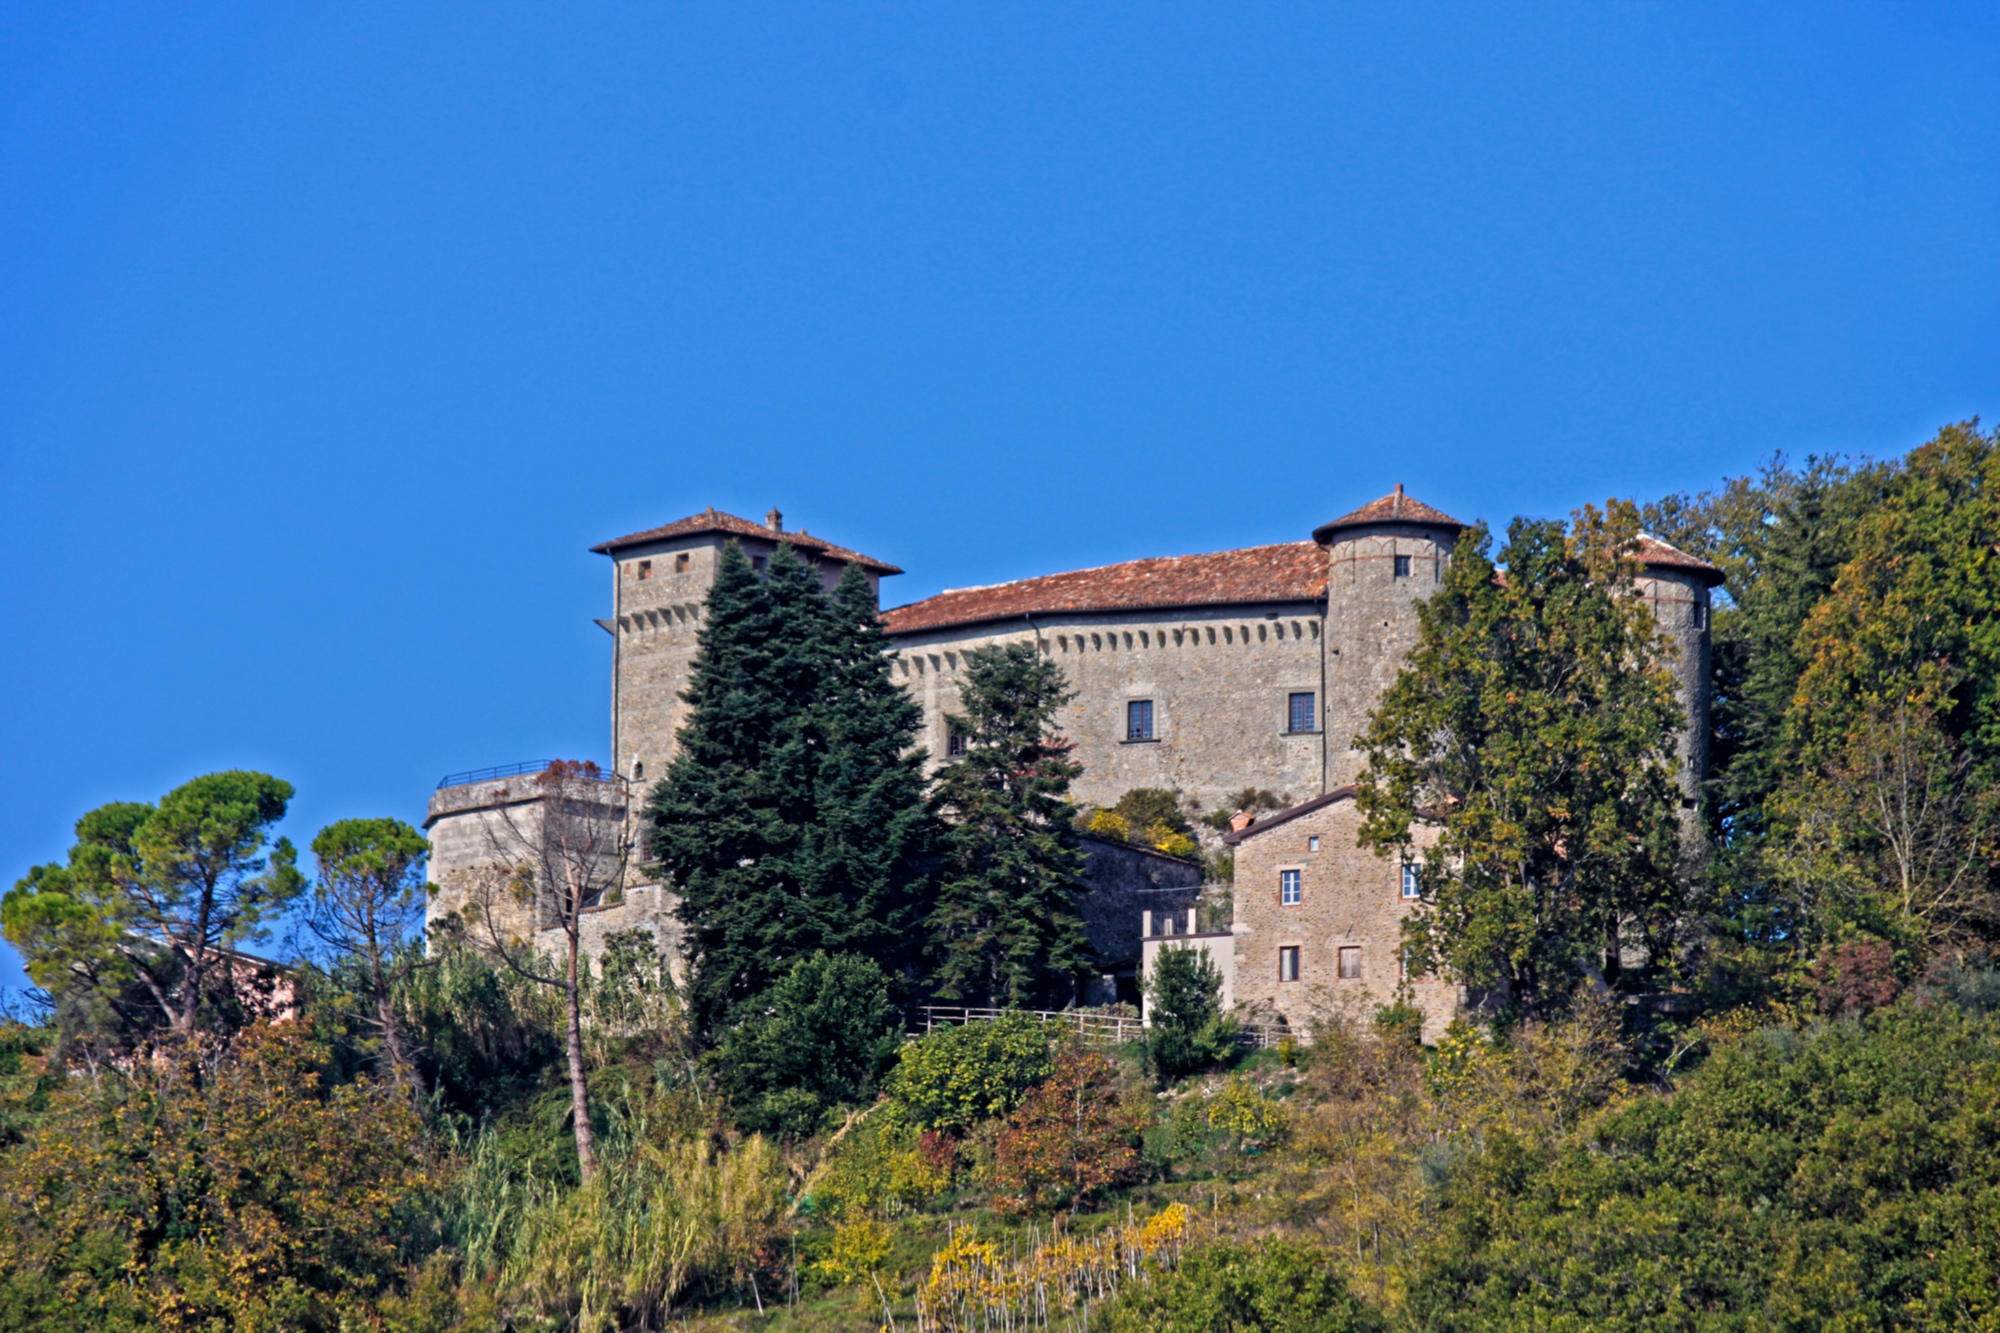 Château Malaspina di Monti - Licciana Nardi